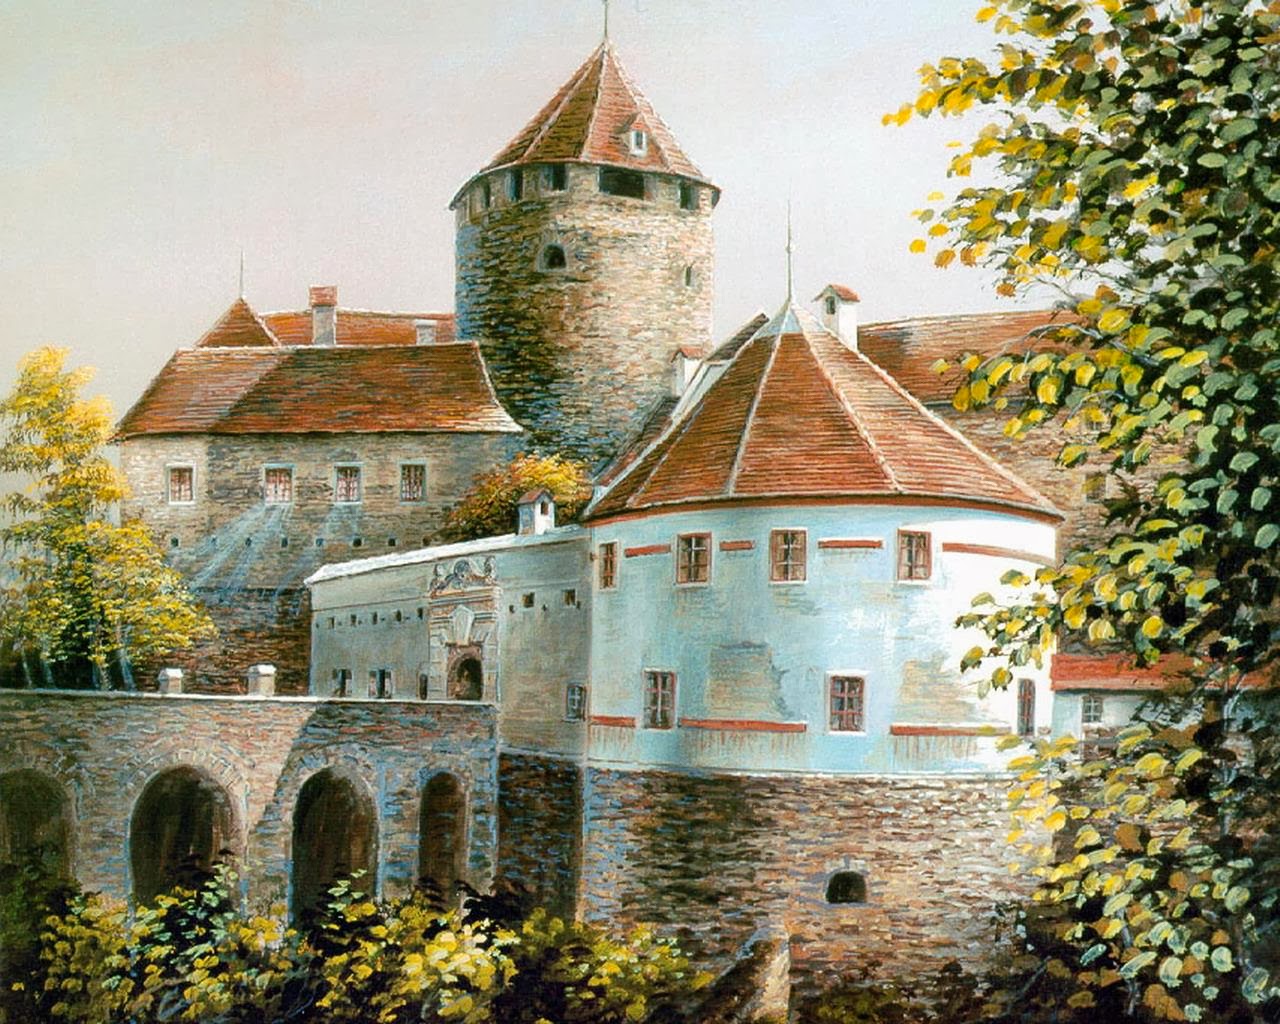 Изображенная на картине крепость была выстроена. Средневековый замок живопись. Средневековый замок акварелью. Средневековые замки Европы. Средневековый замок картина.